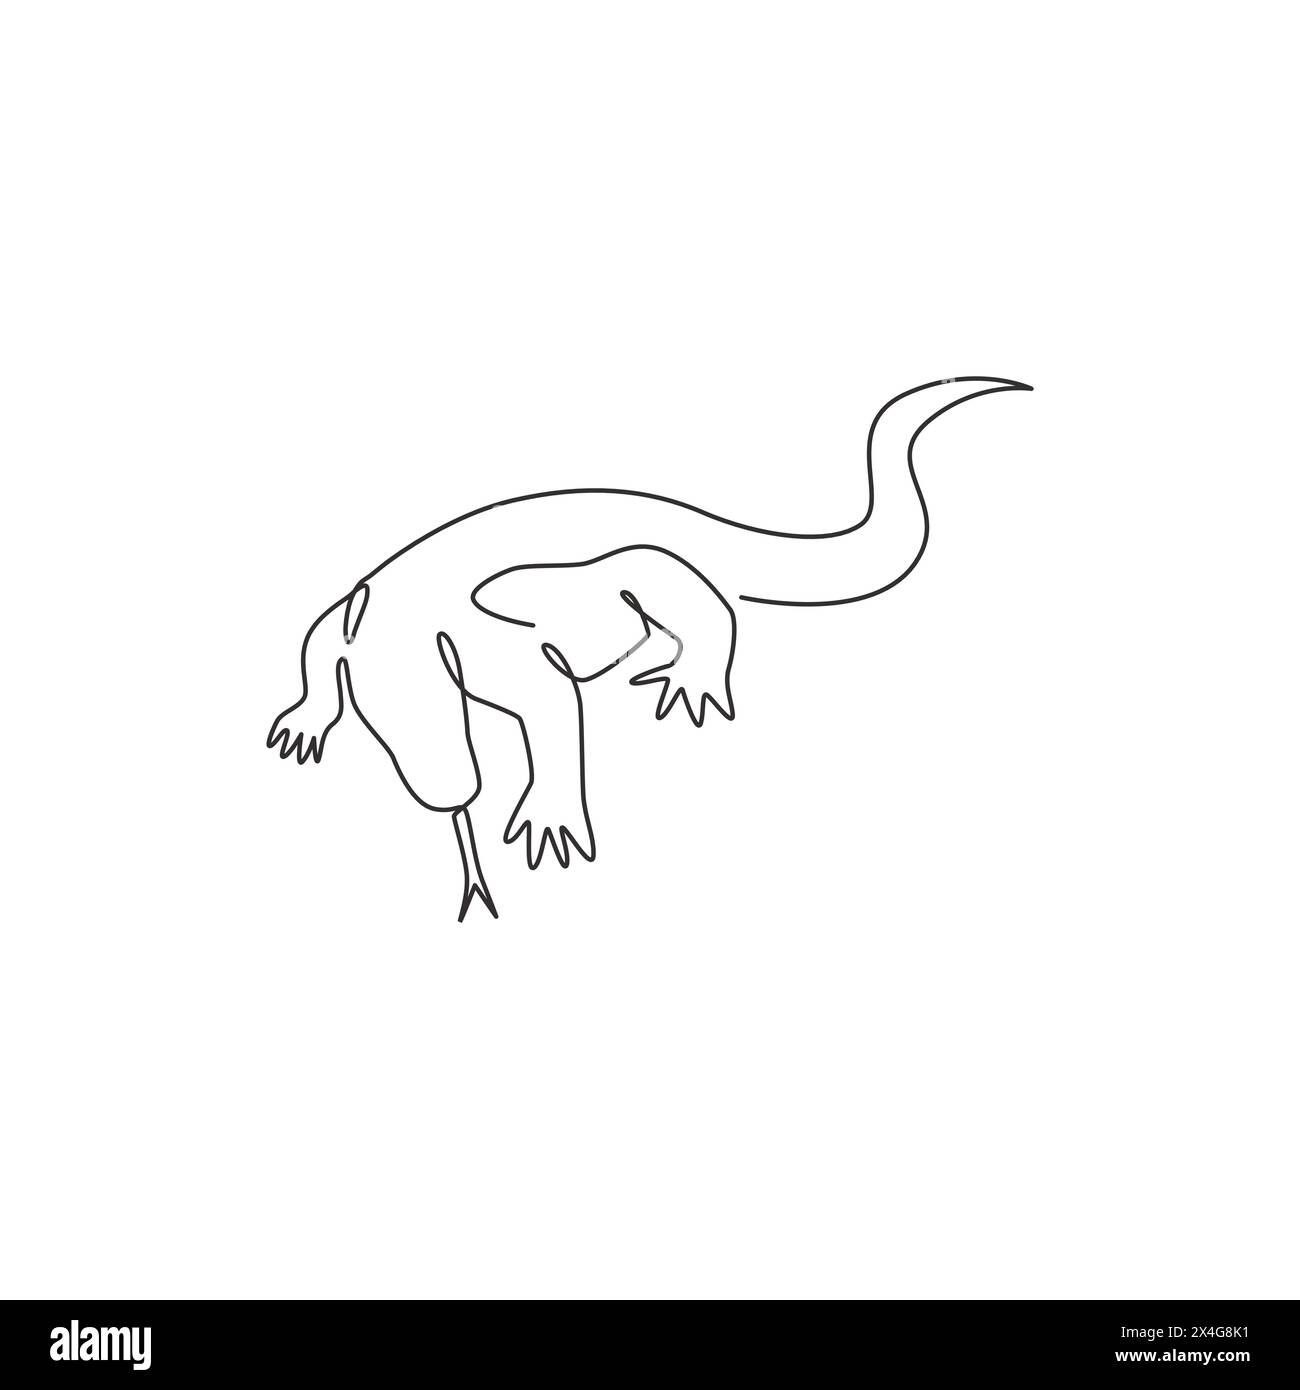 Un dessin simple ligne du dragon fort de komodo pour l'identité du logo de l'entreprise. Concept de mascotte animale prédateur dangereux pour zoo reptilien. Continuo moderne Illustration de Vecteur